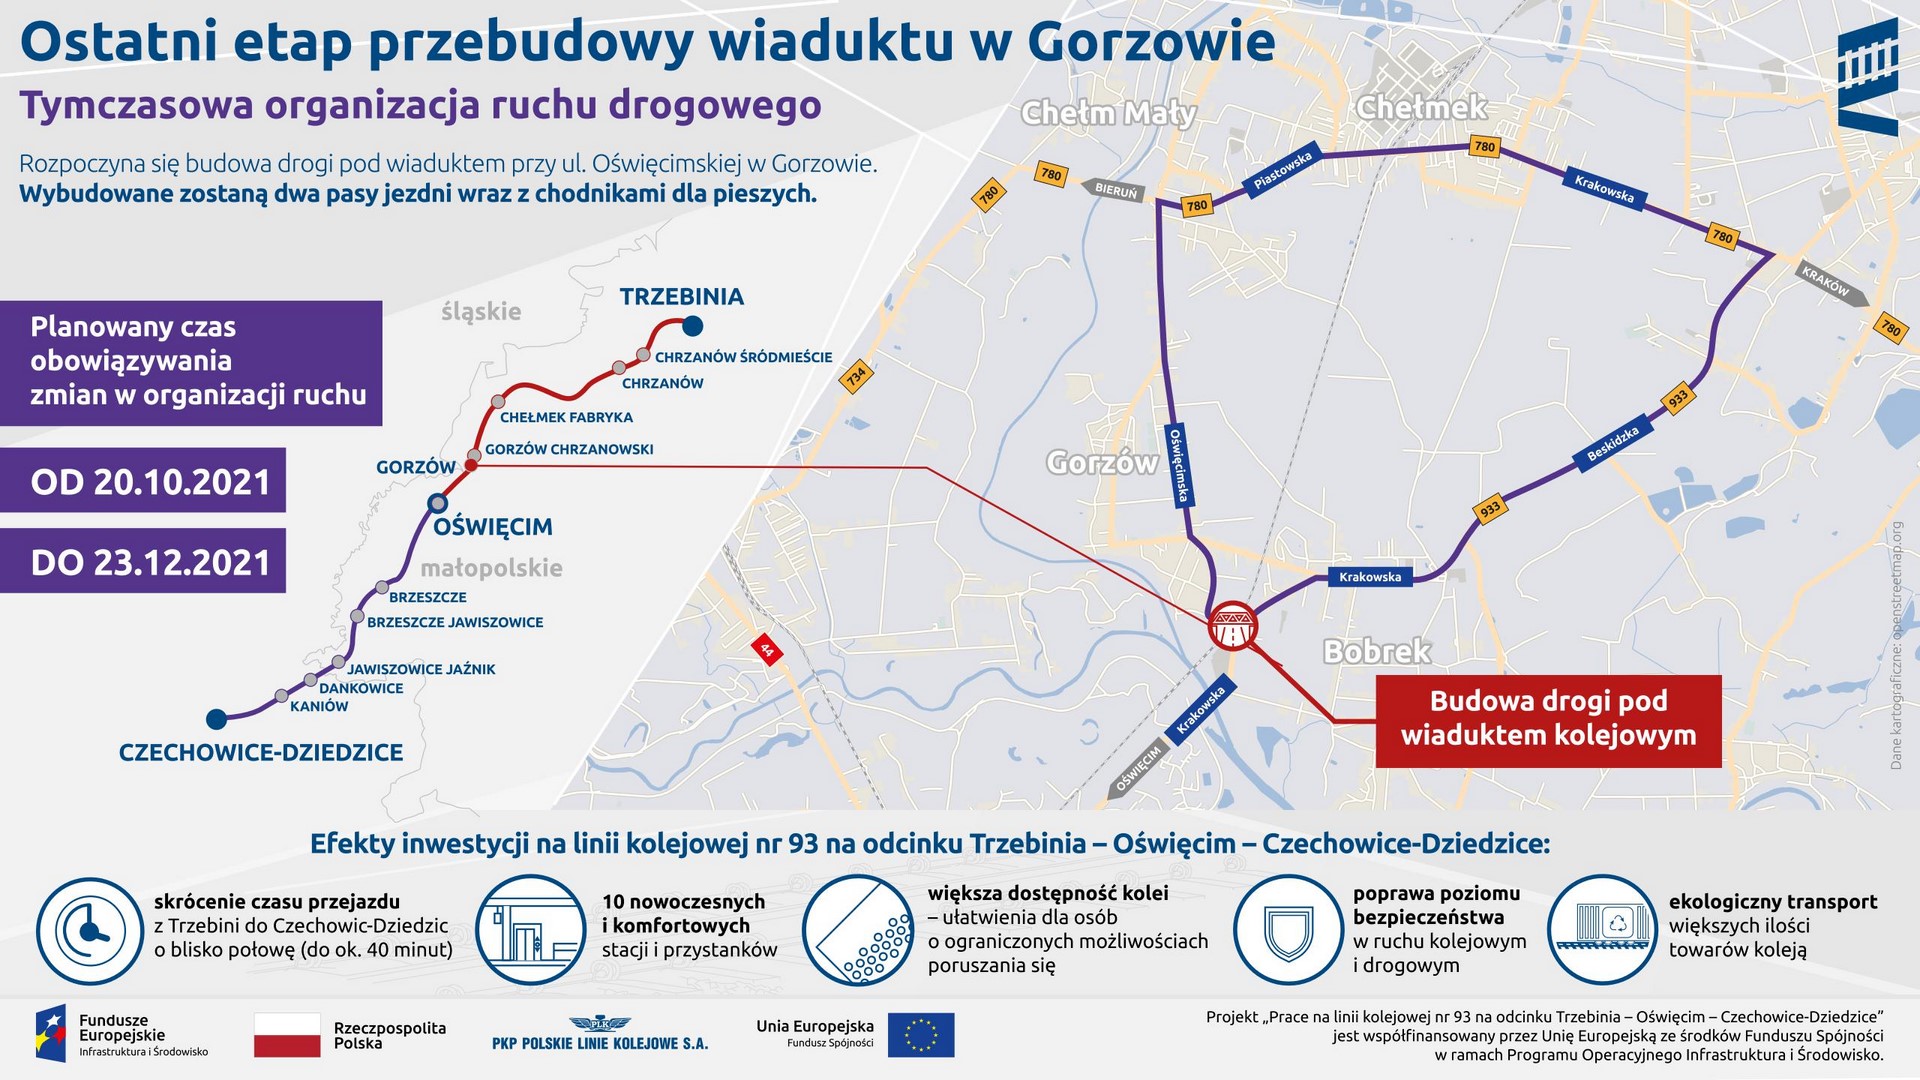 Infografika. Informuje o ostatnim etapie przebudowy wiaduktów w Gorzowie. Po prawej mapka z objazdami a po lewej termin obowiązywania objazdów (od 20.10.2021r. do 23.12.2021 r.)